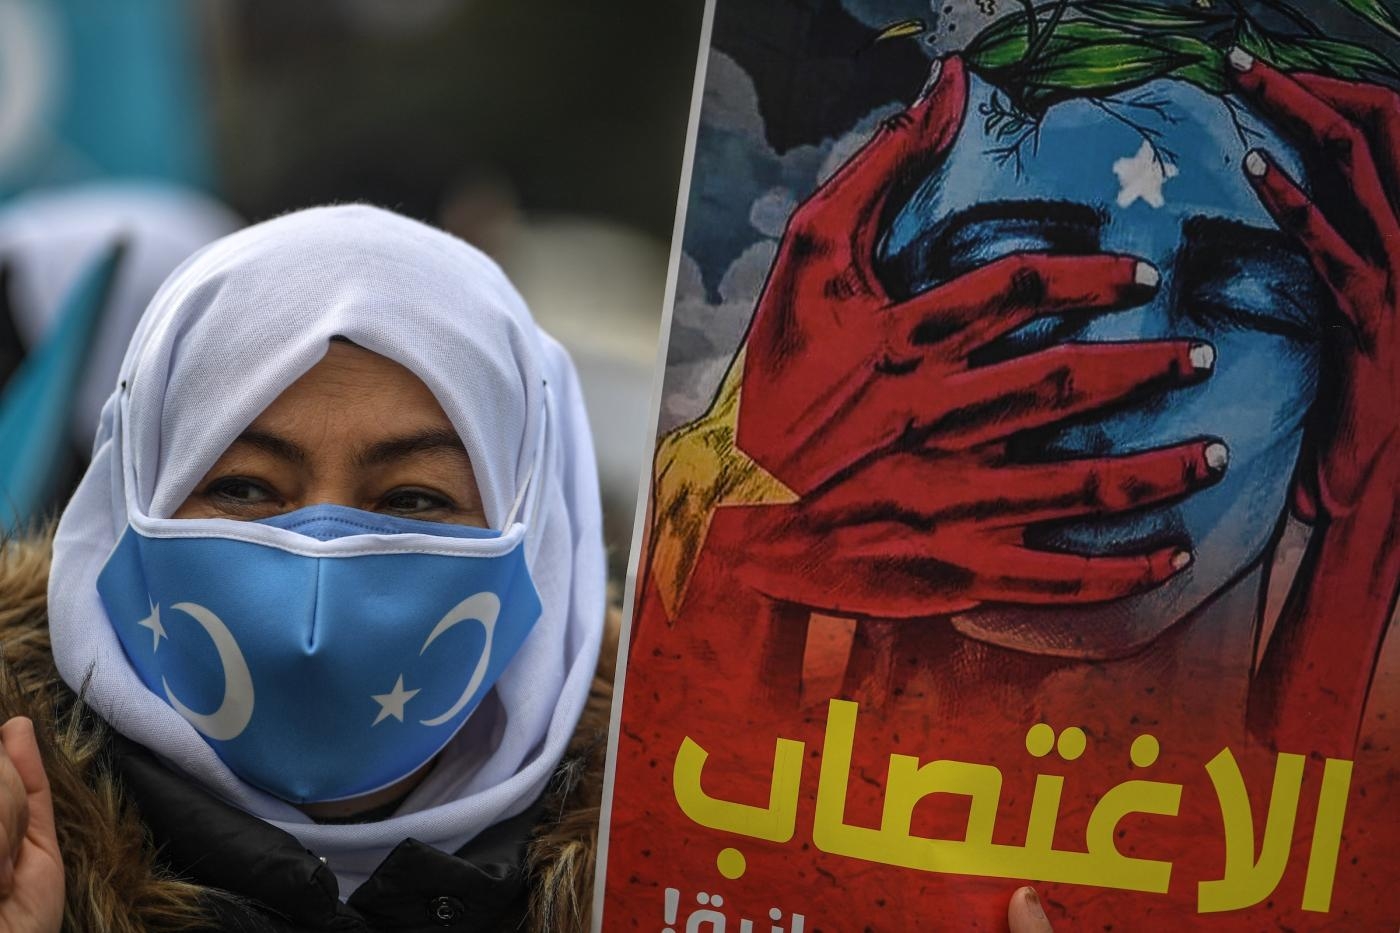 Des musulmans ouïghours manifestent devant le consulat chinois à Istanbul contre la ratification d’un traité d’extradition entre la Chine et la Turquie, le 8 mars 2021 (AFP)